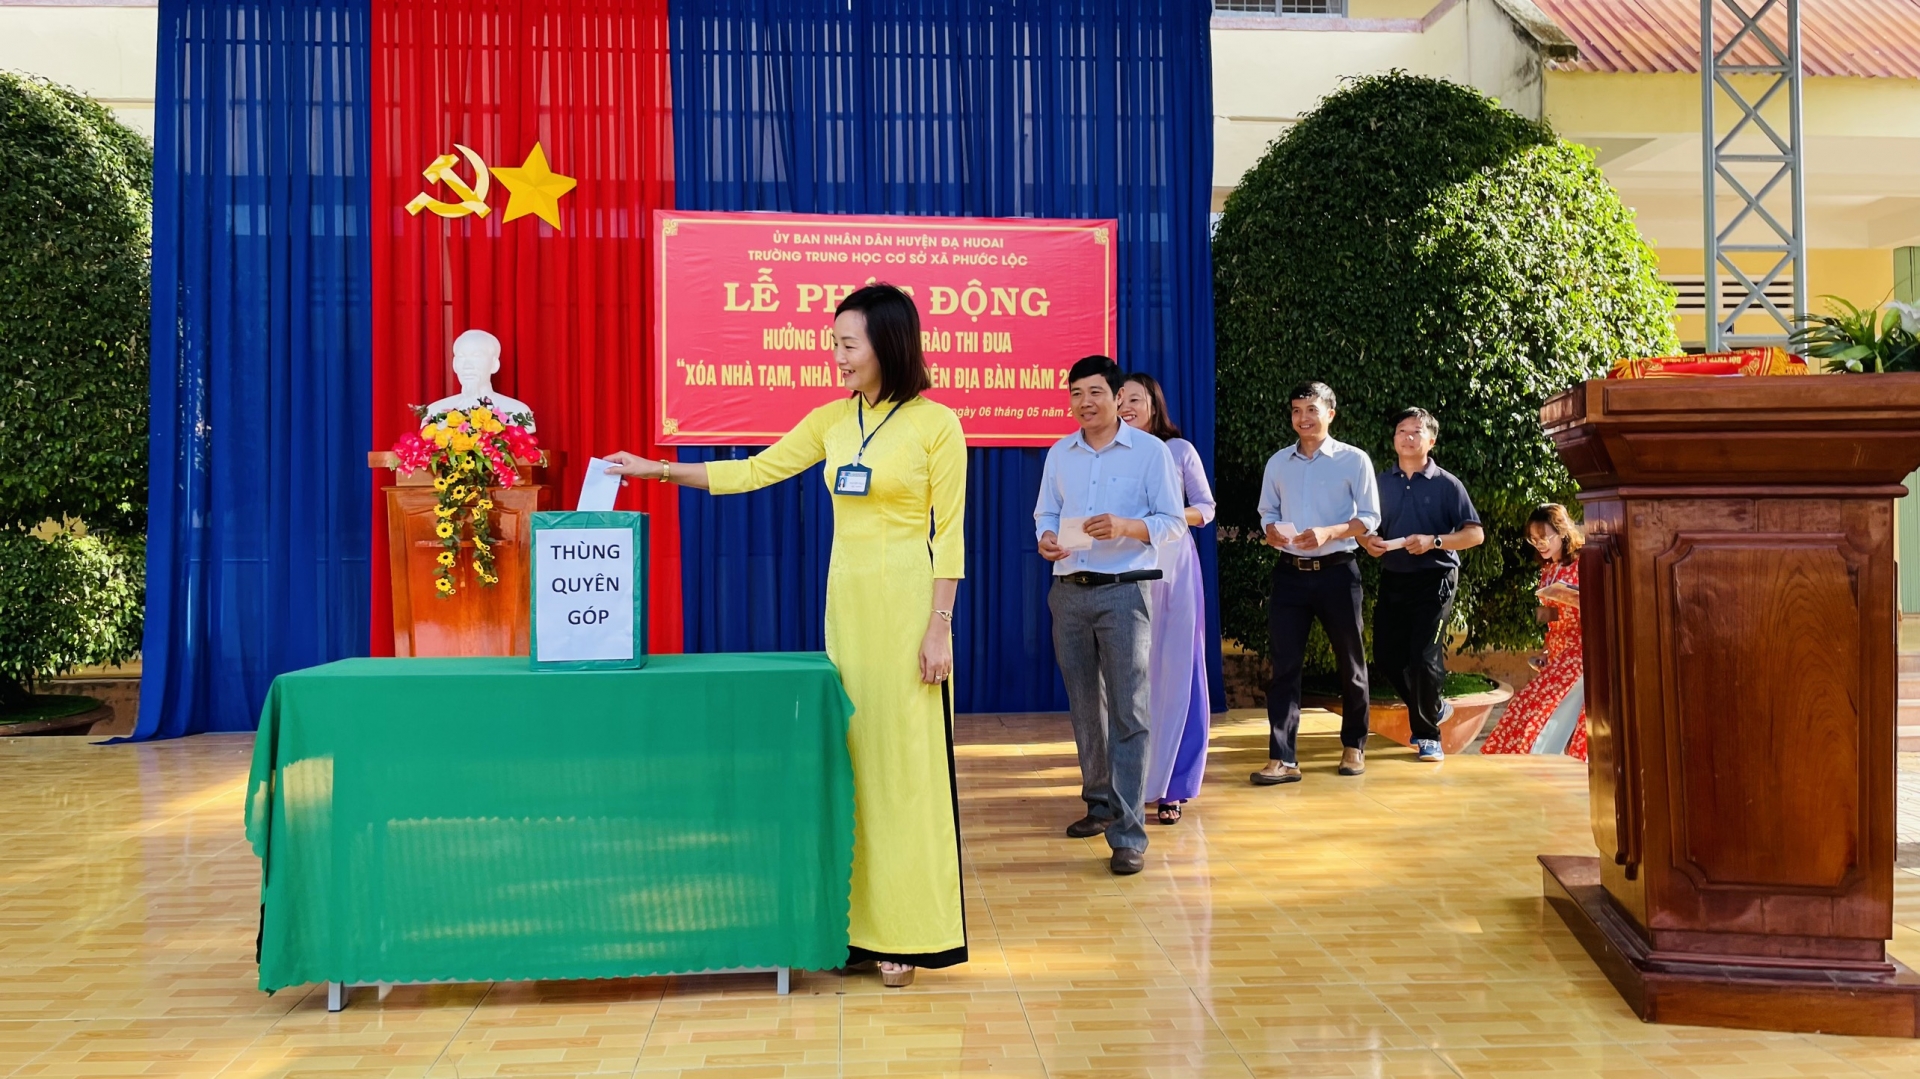 Ngành Giáo dục huyện Đạ Huoai phát động phong trào thi đua “Xóa nhà tạm – nhà dột nát”